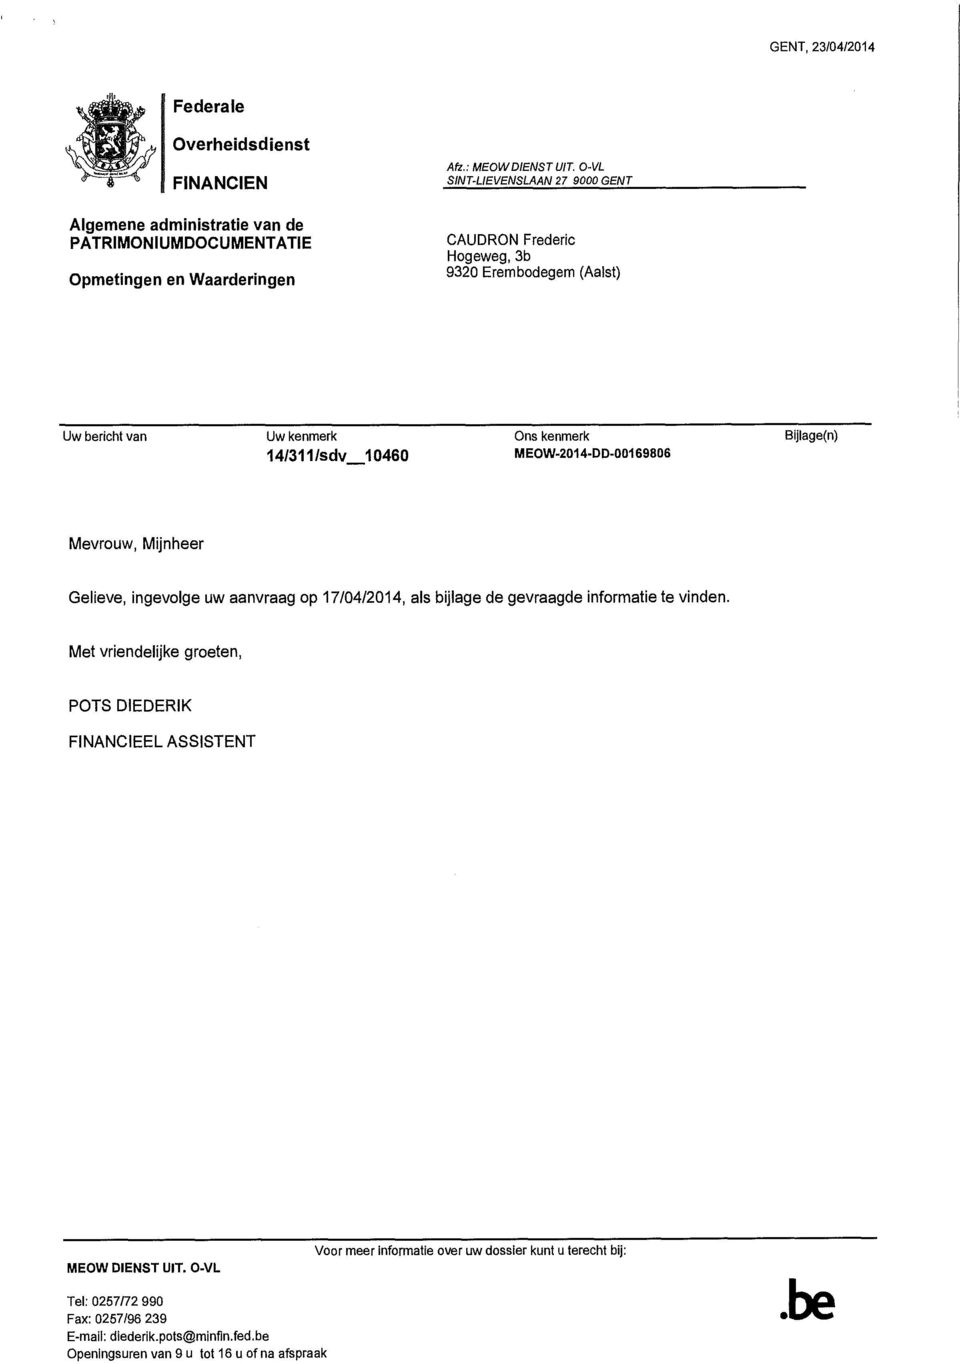 MEOW-2014-DD-00169806 Mevrouw, Mijnheer Gelieve, ingevolge uw aanvraag op 17/04/2014, als bijlage de gevraagde informatie te vinden.